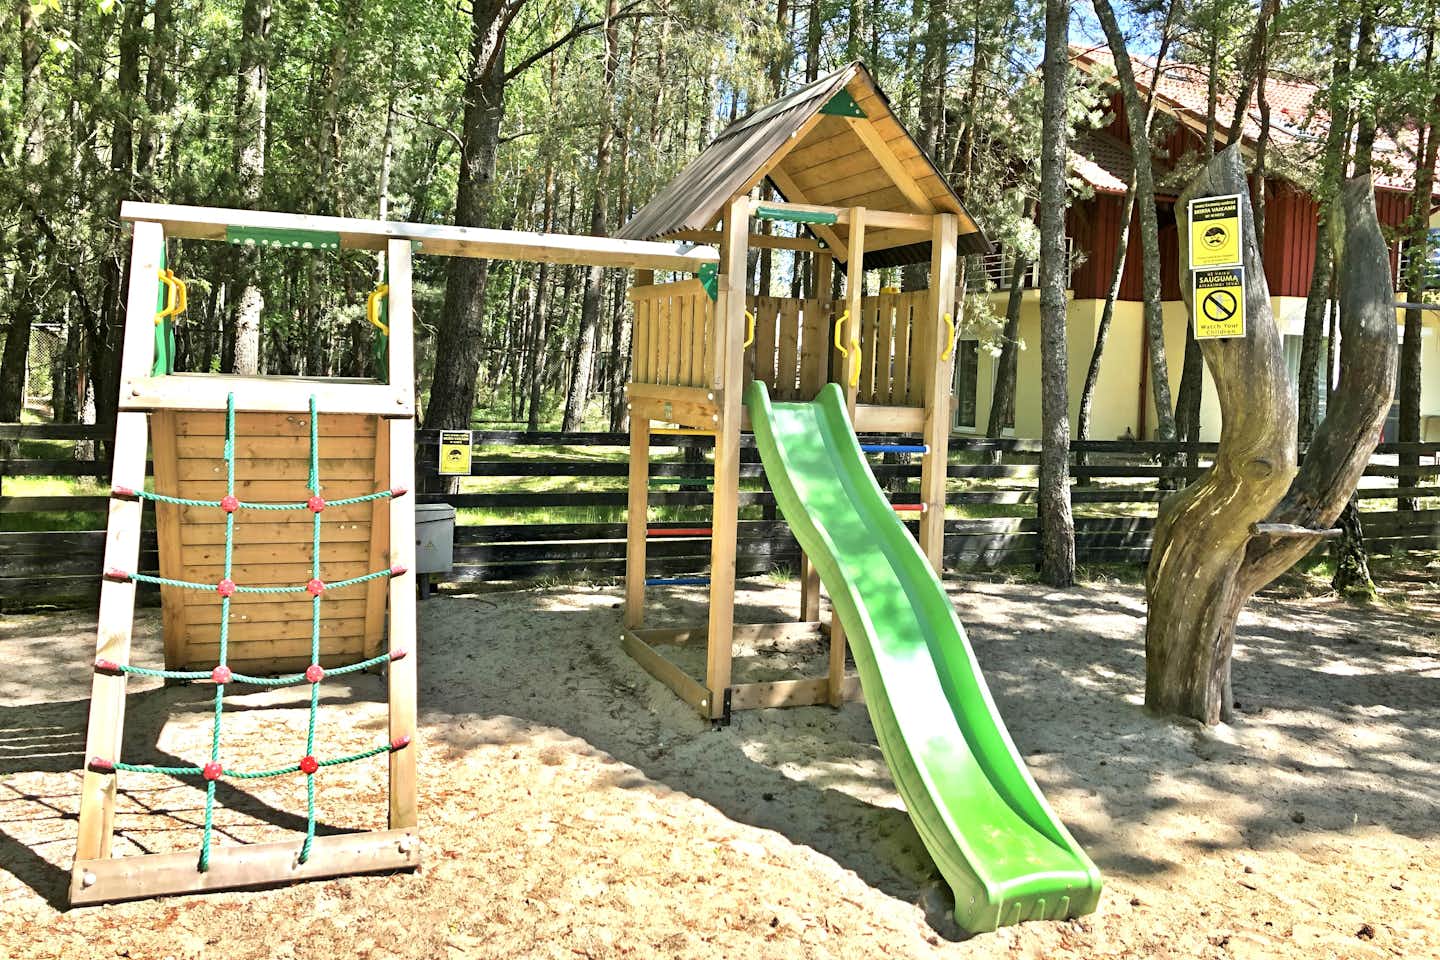 Camping Nida - Kinderspielplatz mit Kletternetz, Schaukel, Holzhäuschen